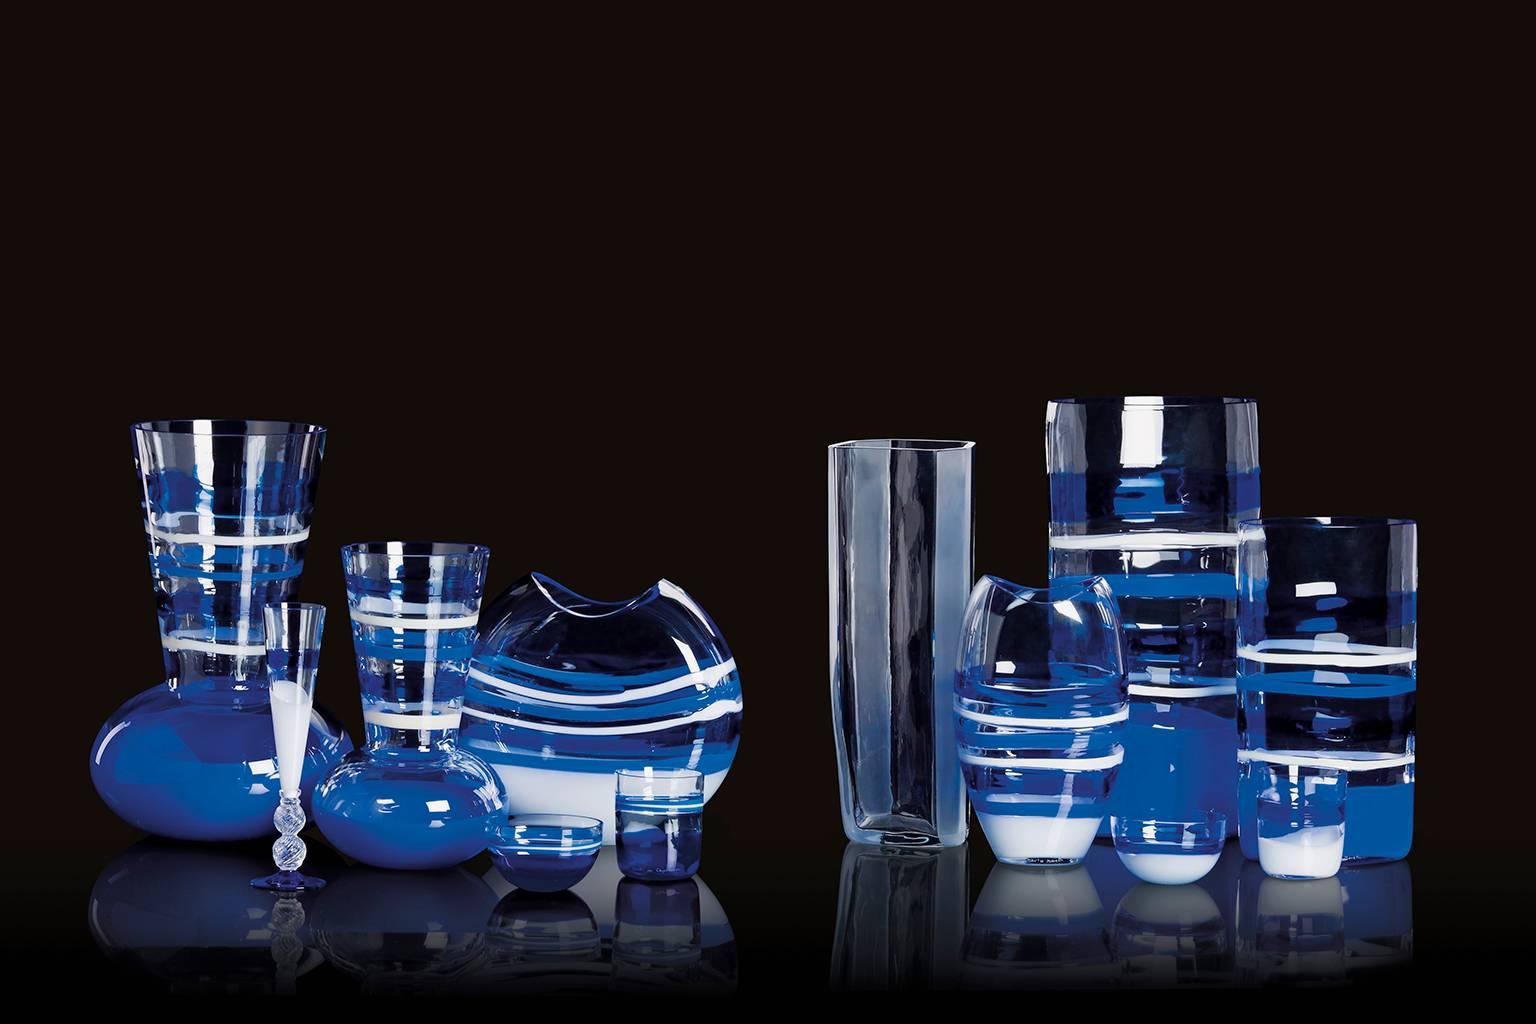 Arco Carlo Moretti zeitgenössische Vase aus mundgeblasenem Muranoglas in Blau, Weiß und Klarglas.

Carlo Moretti: Eine handwerkliche Fabrik

Der mit feinem Gespür ausgestattete Besucher, der durch die Fundamente von Murano schlendert und sich in